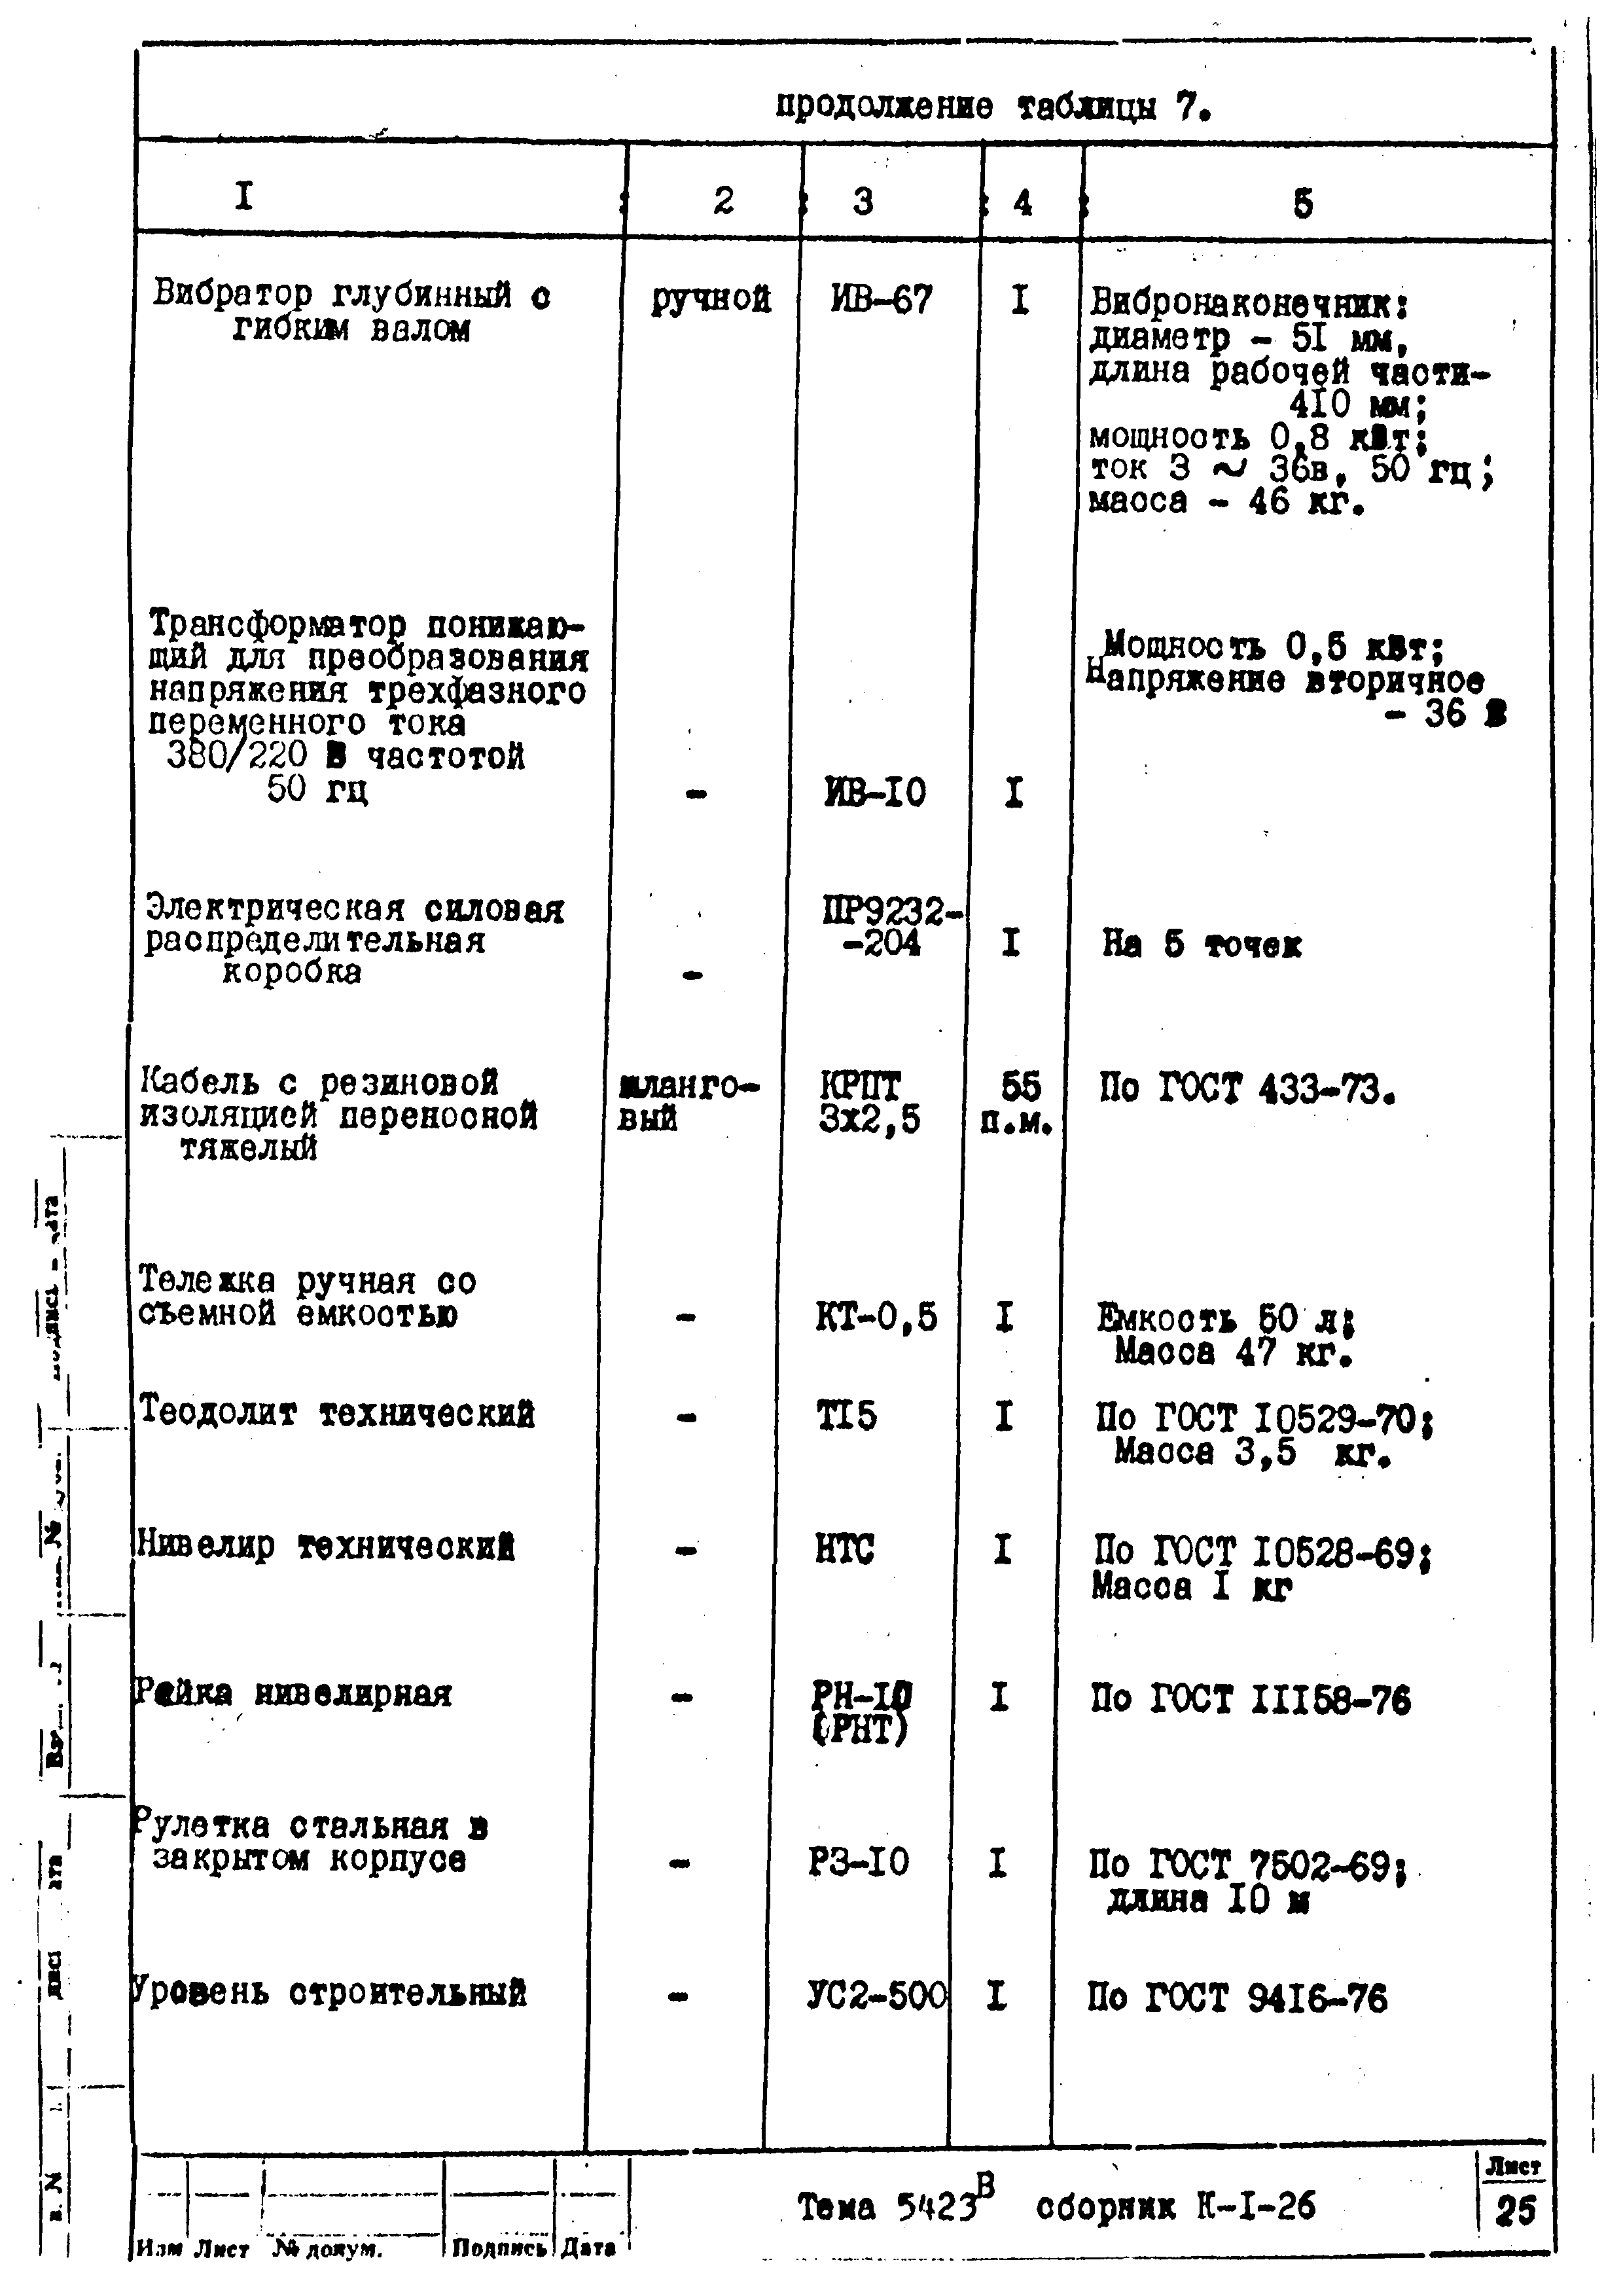 Технологическая карта К-1-26